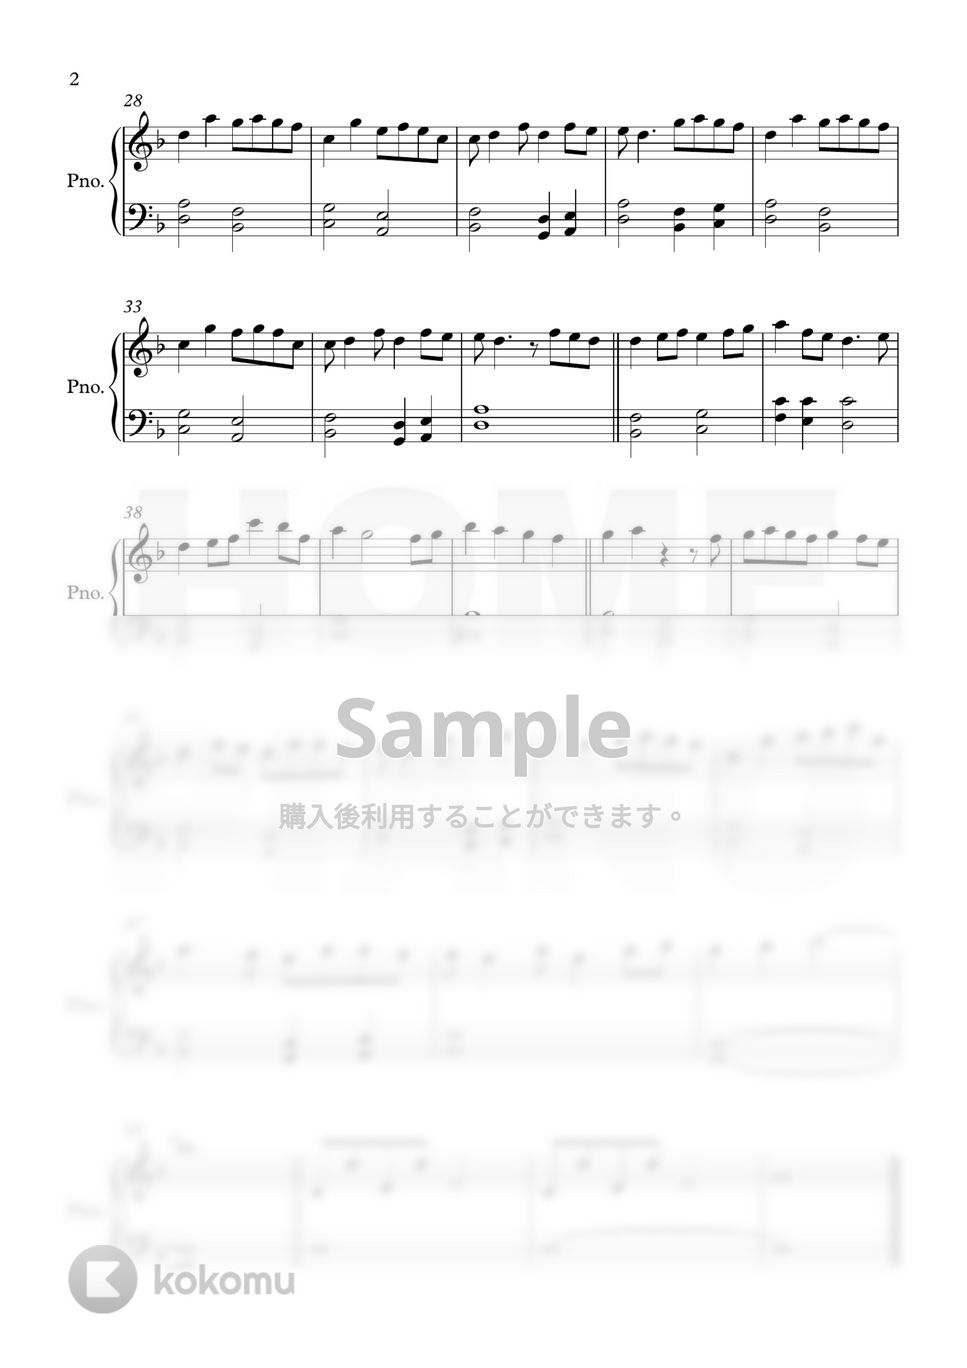 アラジン - スピーチレス～心の声 (初級) by HOME PIANO